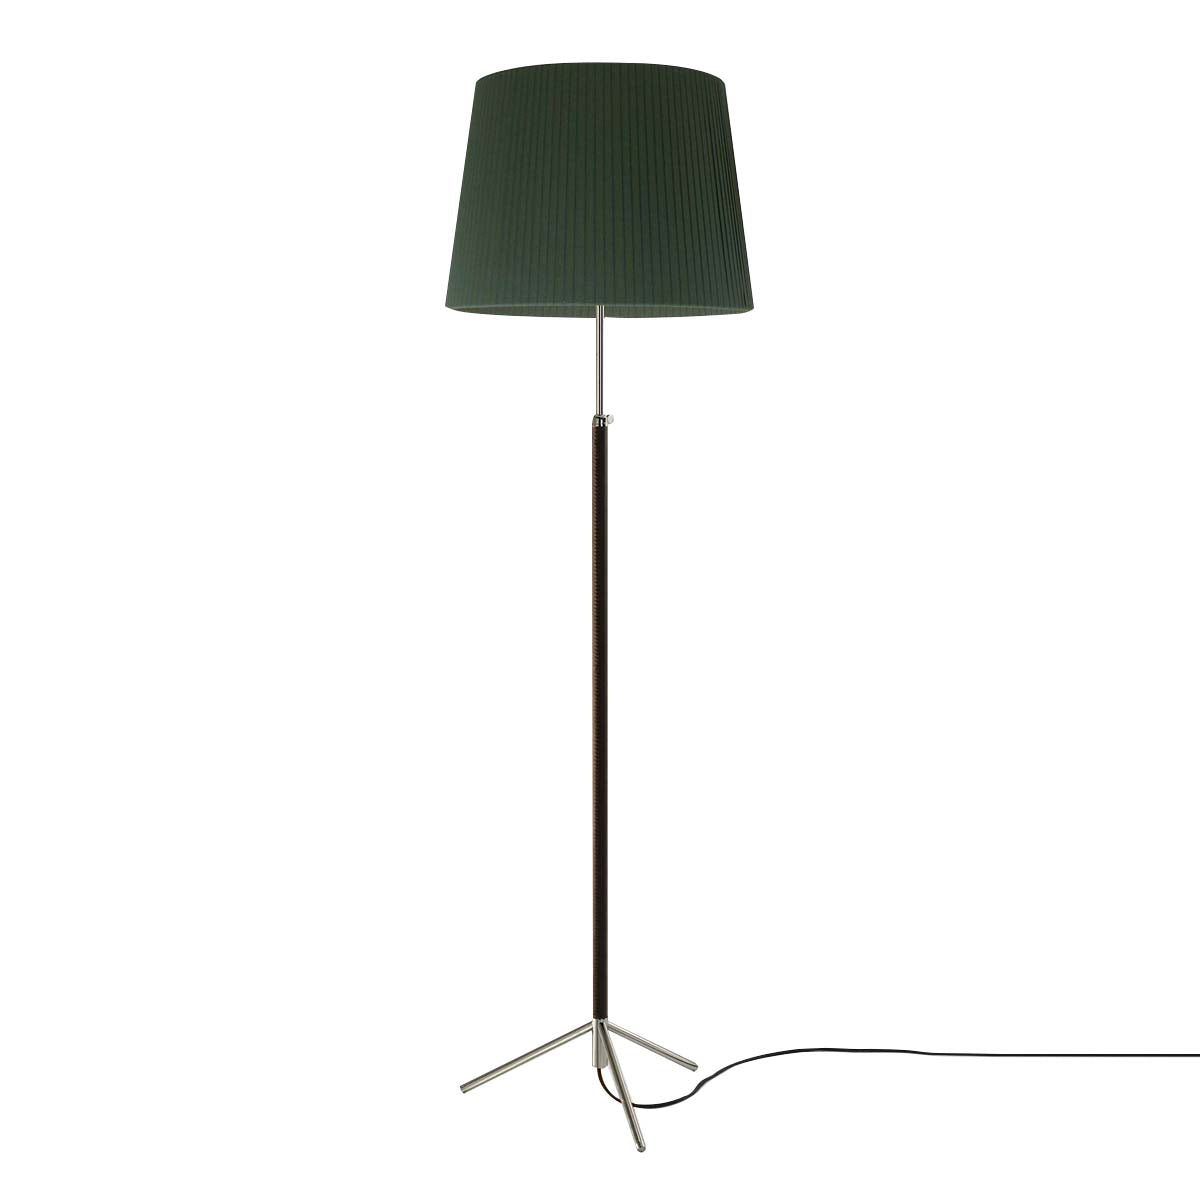 Pie de Salón Floor Lamp: G1 + Chrome-Plated + Green